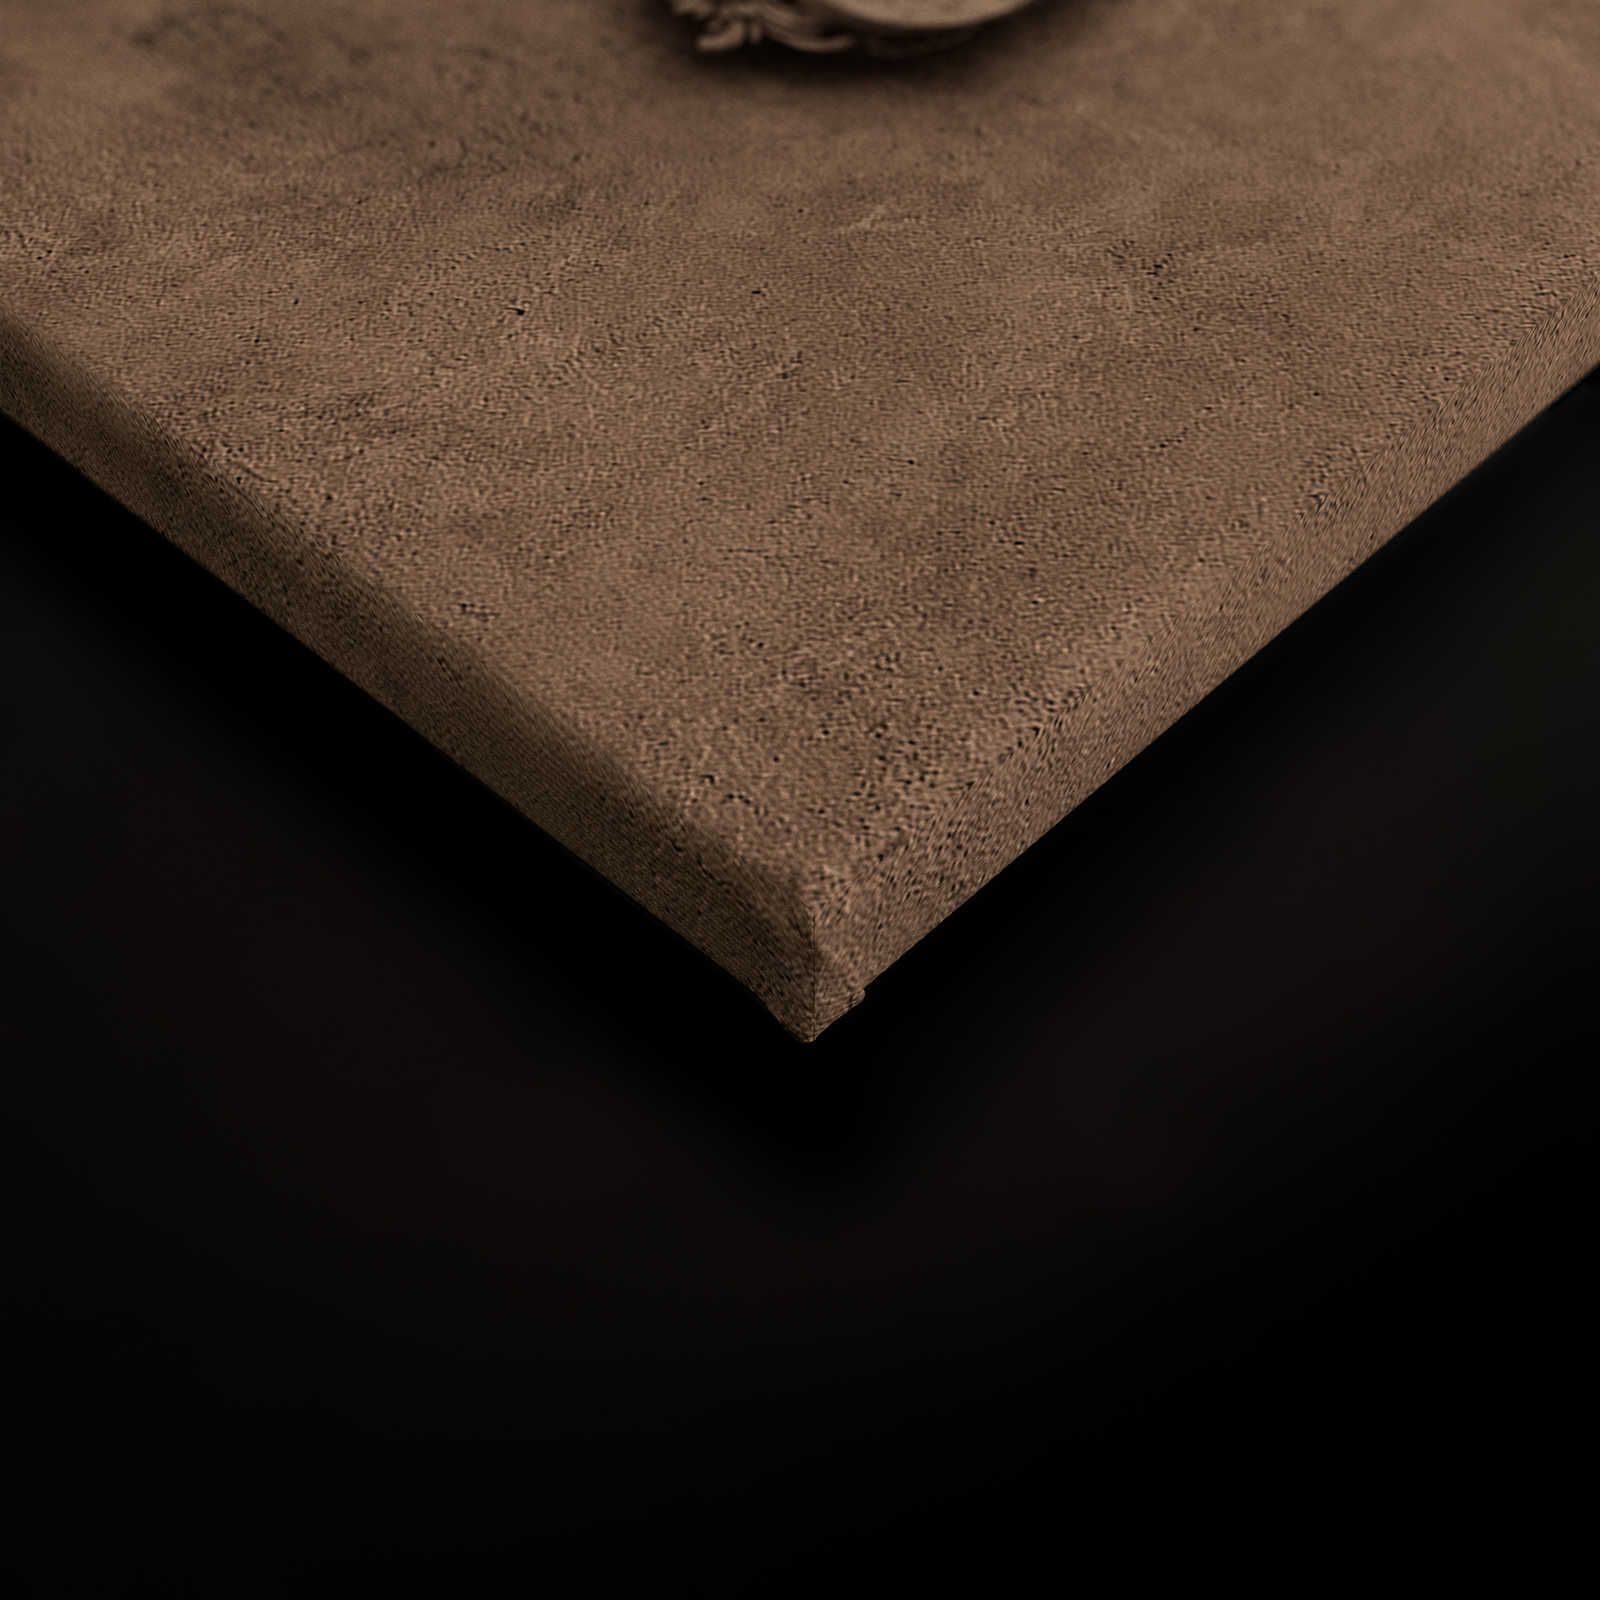             Lione 1 - Quadro su tela 3D con cornice in stucco e aspetto intonaco in marrone - 0,90 m x 0,60 m
        